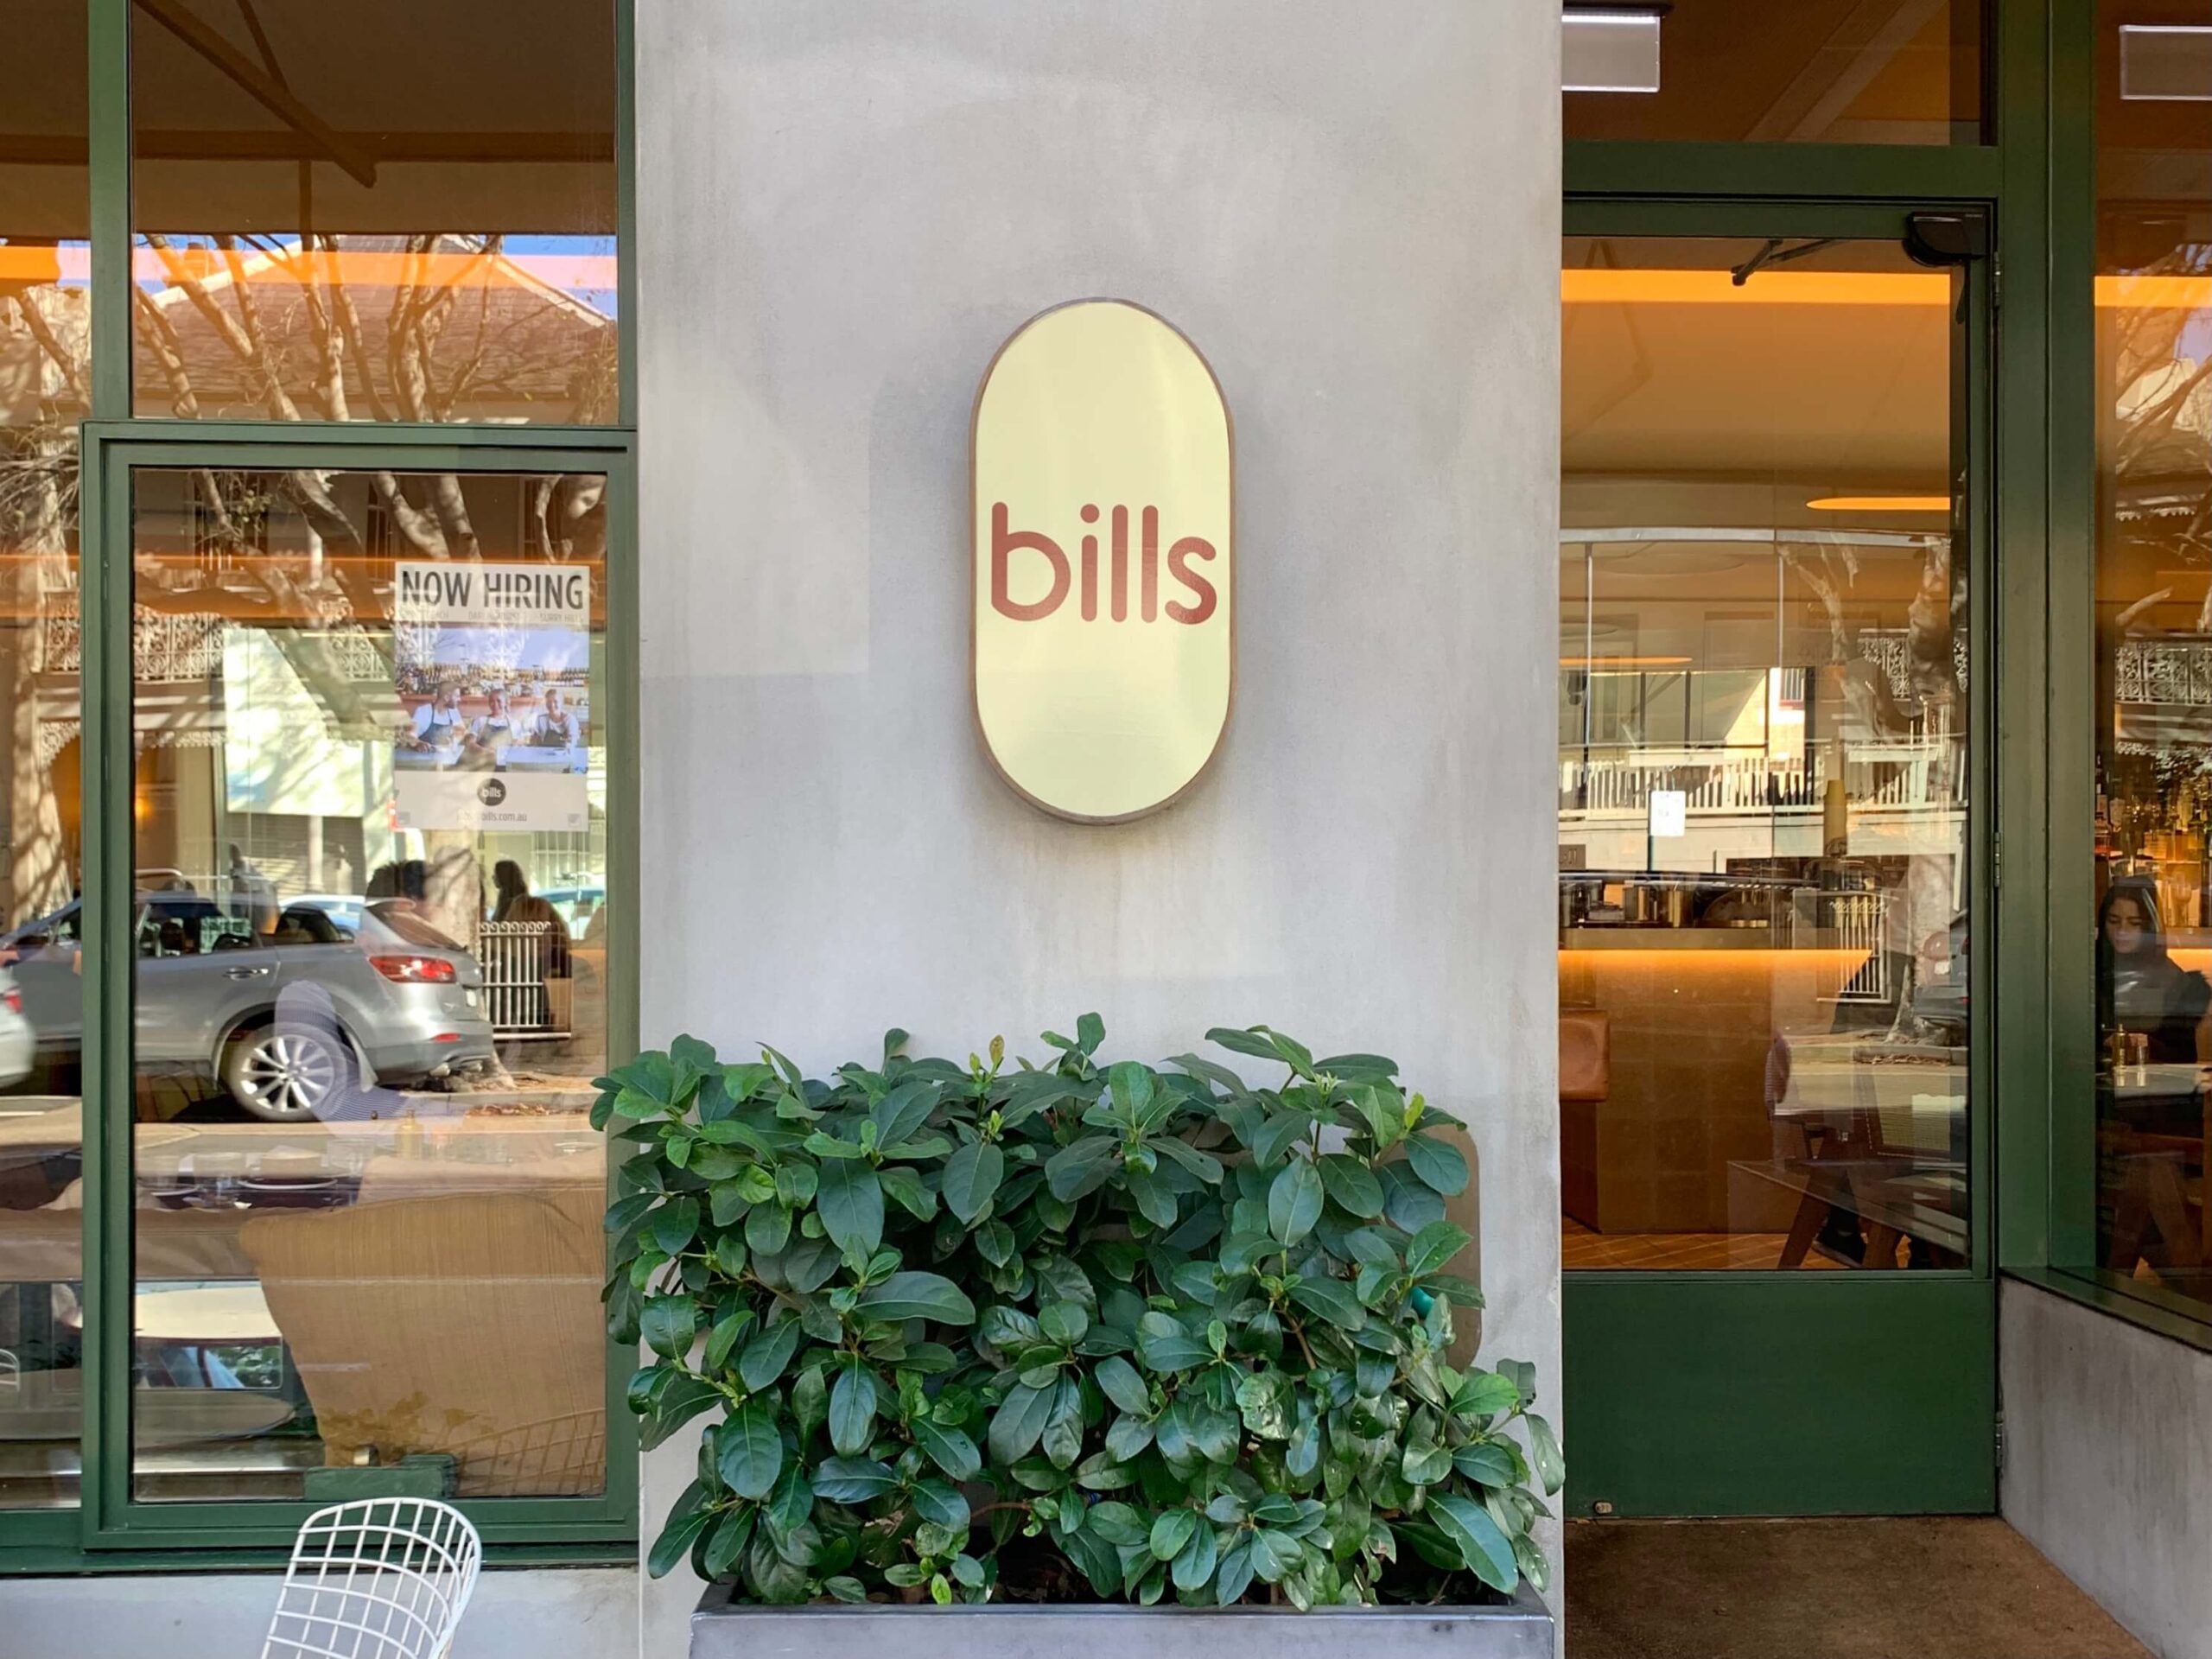 シドニーのレストラン【bills】の看板を撮影した写真